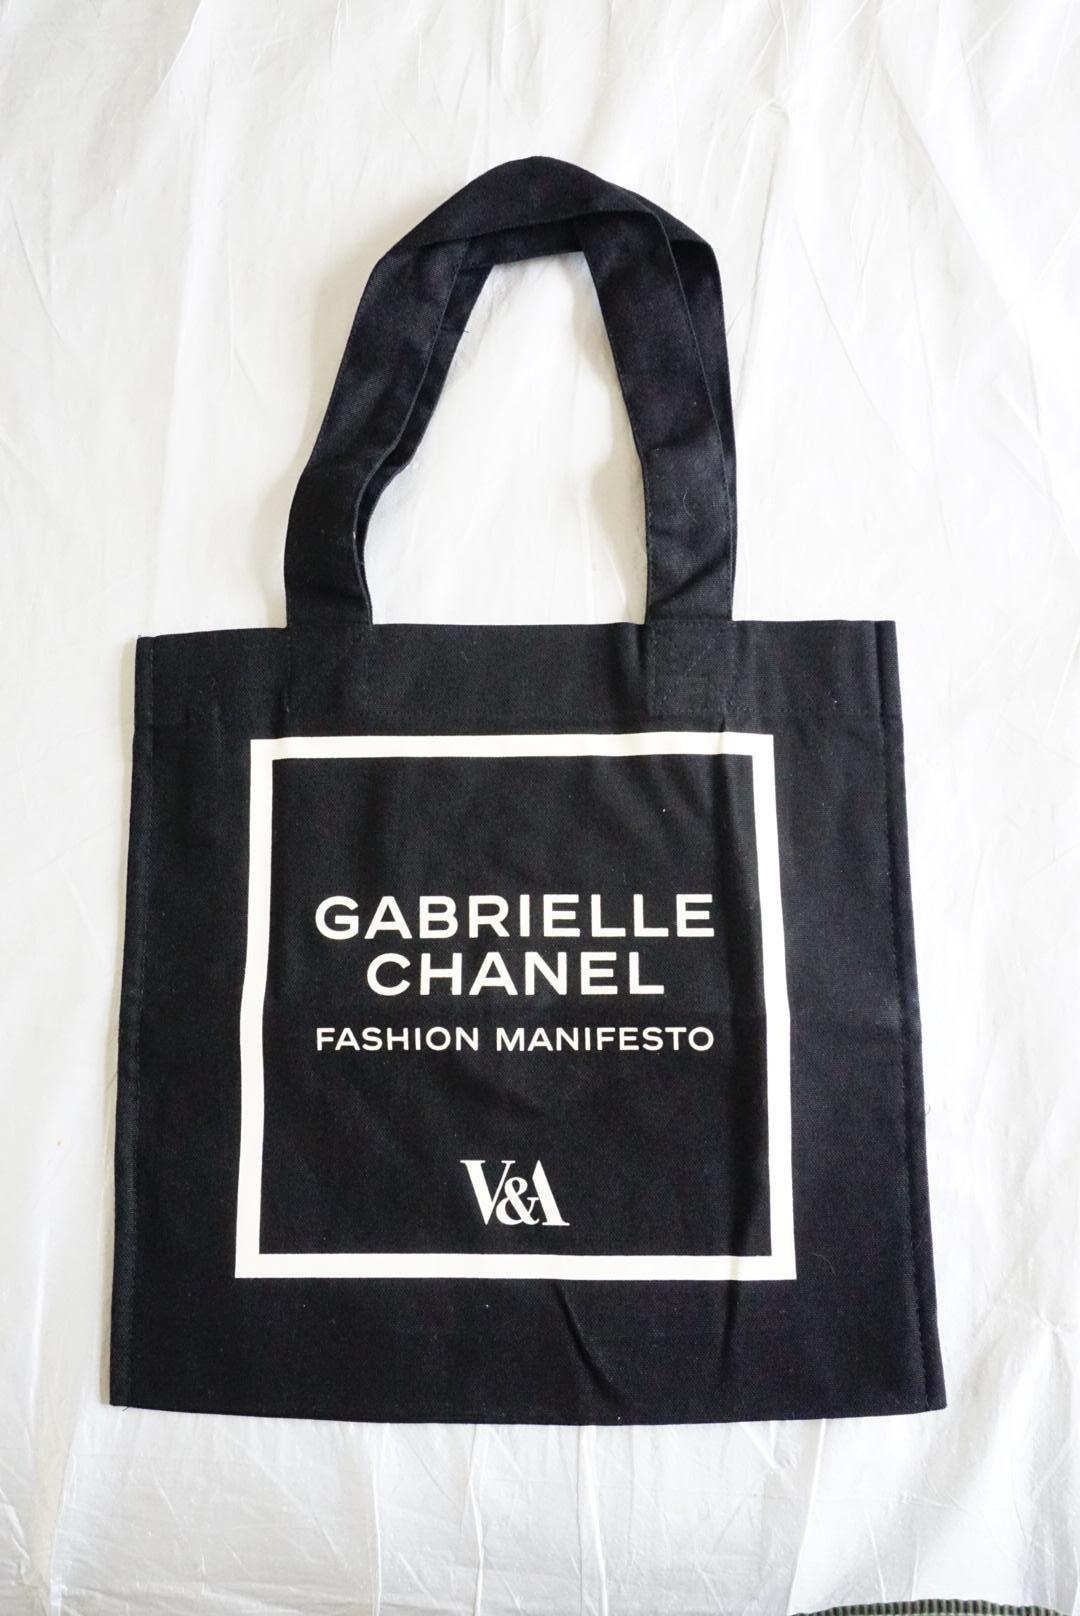 Inspiré par la sophistication chic de Gabrielle Chanel et sa mode emblématique, ce sac fourre-tout a été créé pour accompagner l'exposition Gabrielle Chanel. Fashion Manifesto au V&A South Kensington.

D'une taille unique dans la gamme V.I.I., il